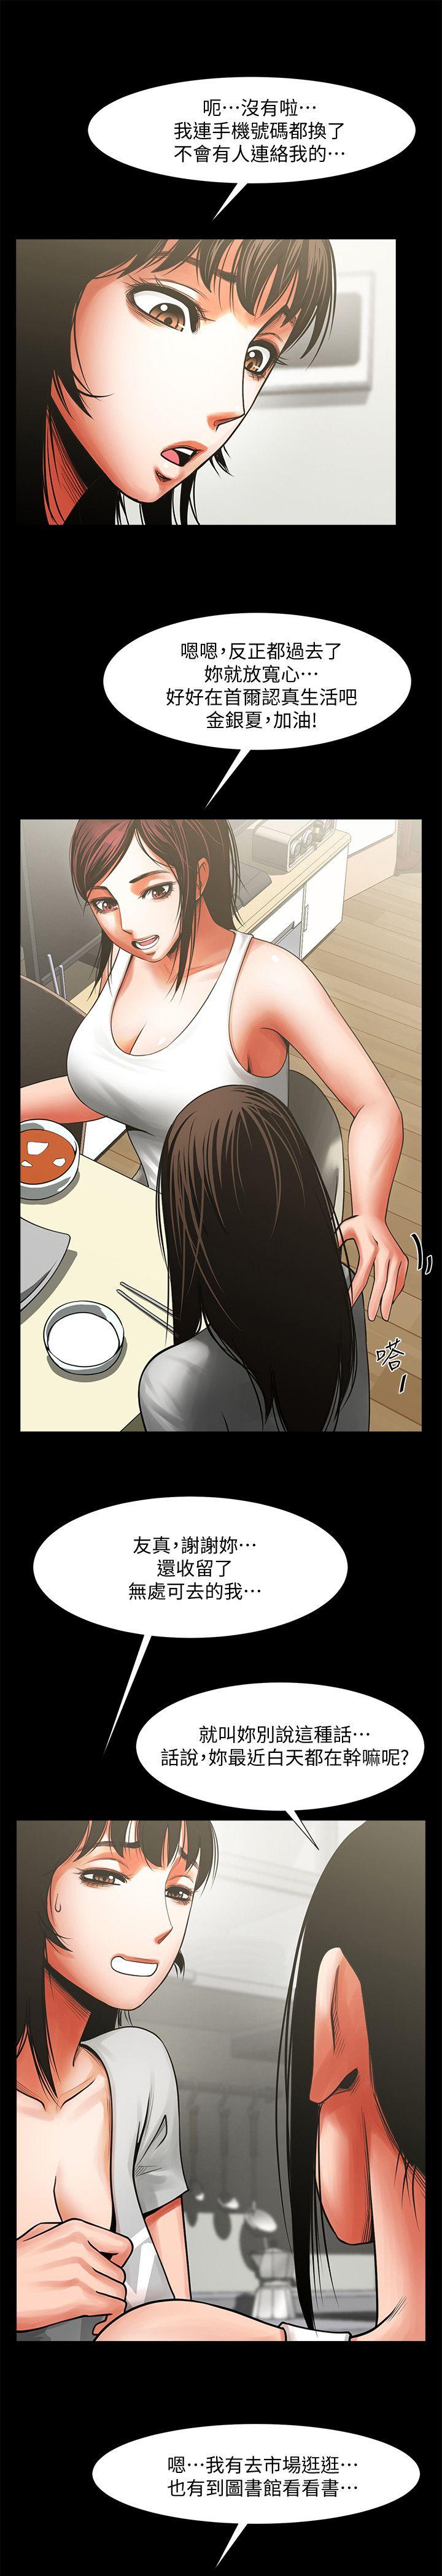 《共享情人》漫画 第10话 - 友真对银夏起疑